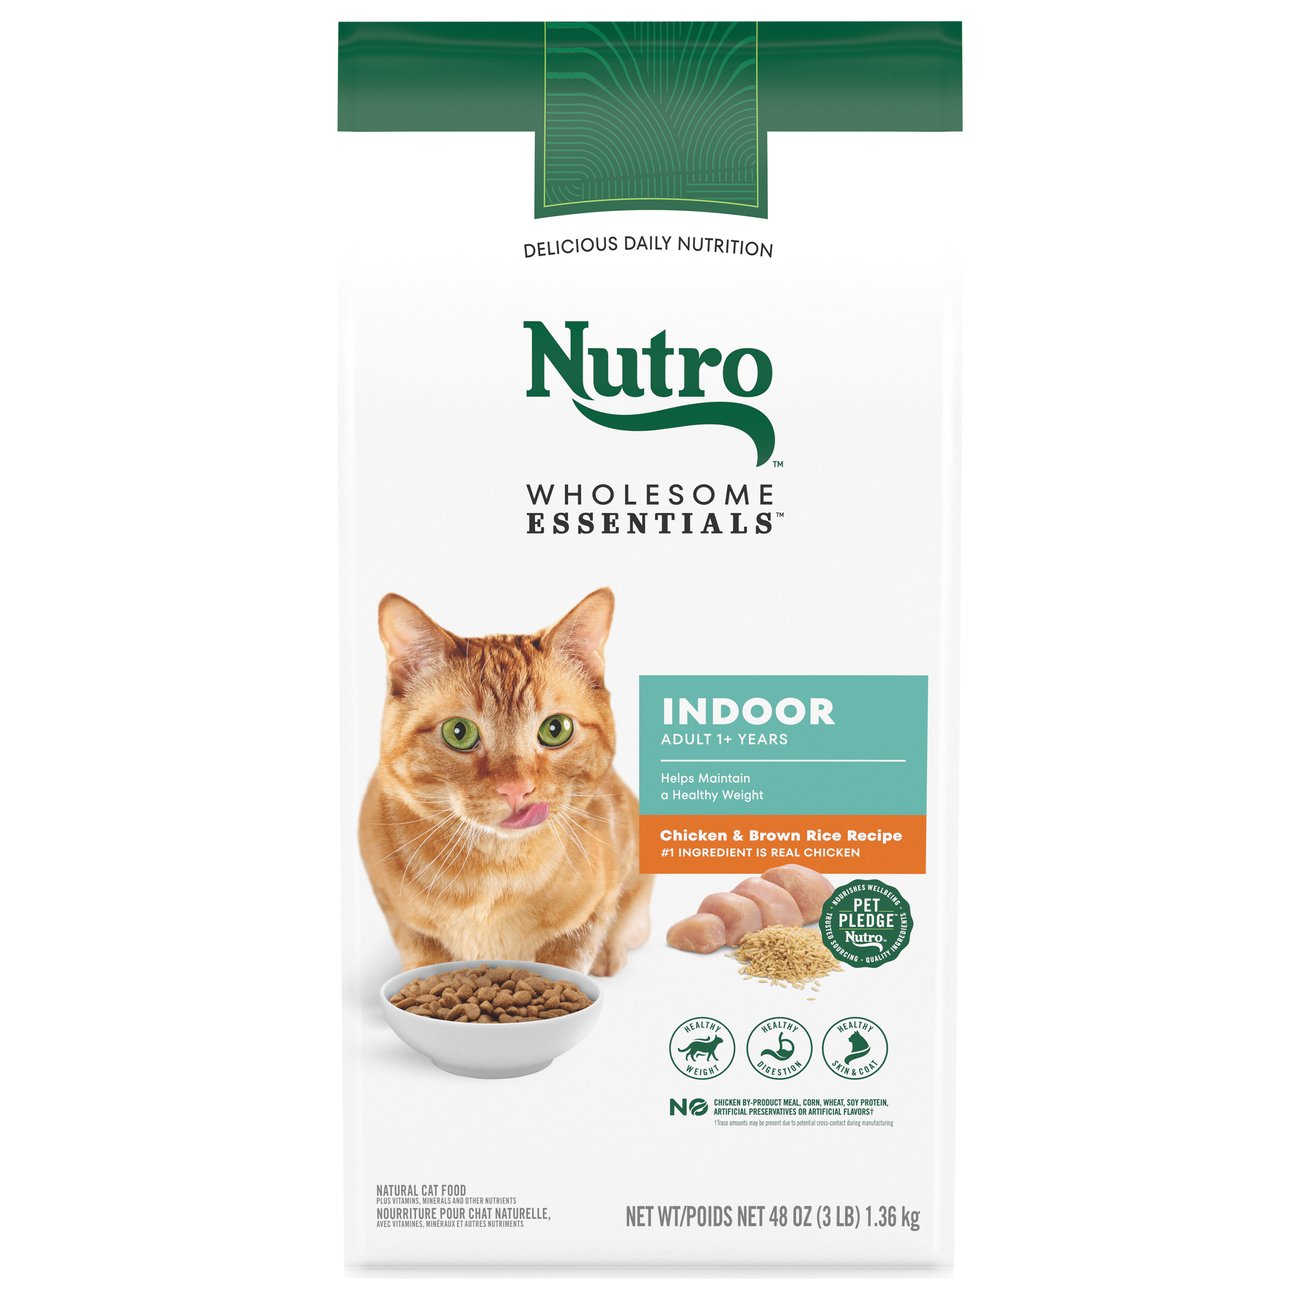 nutro cat food ingredients